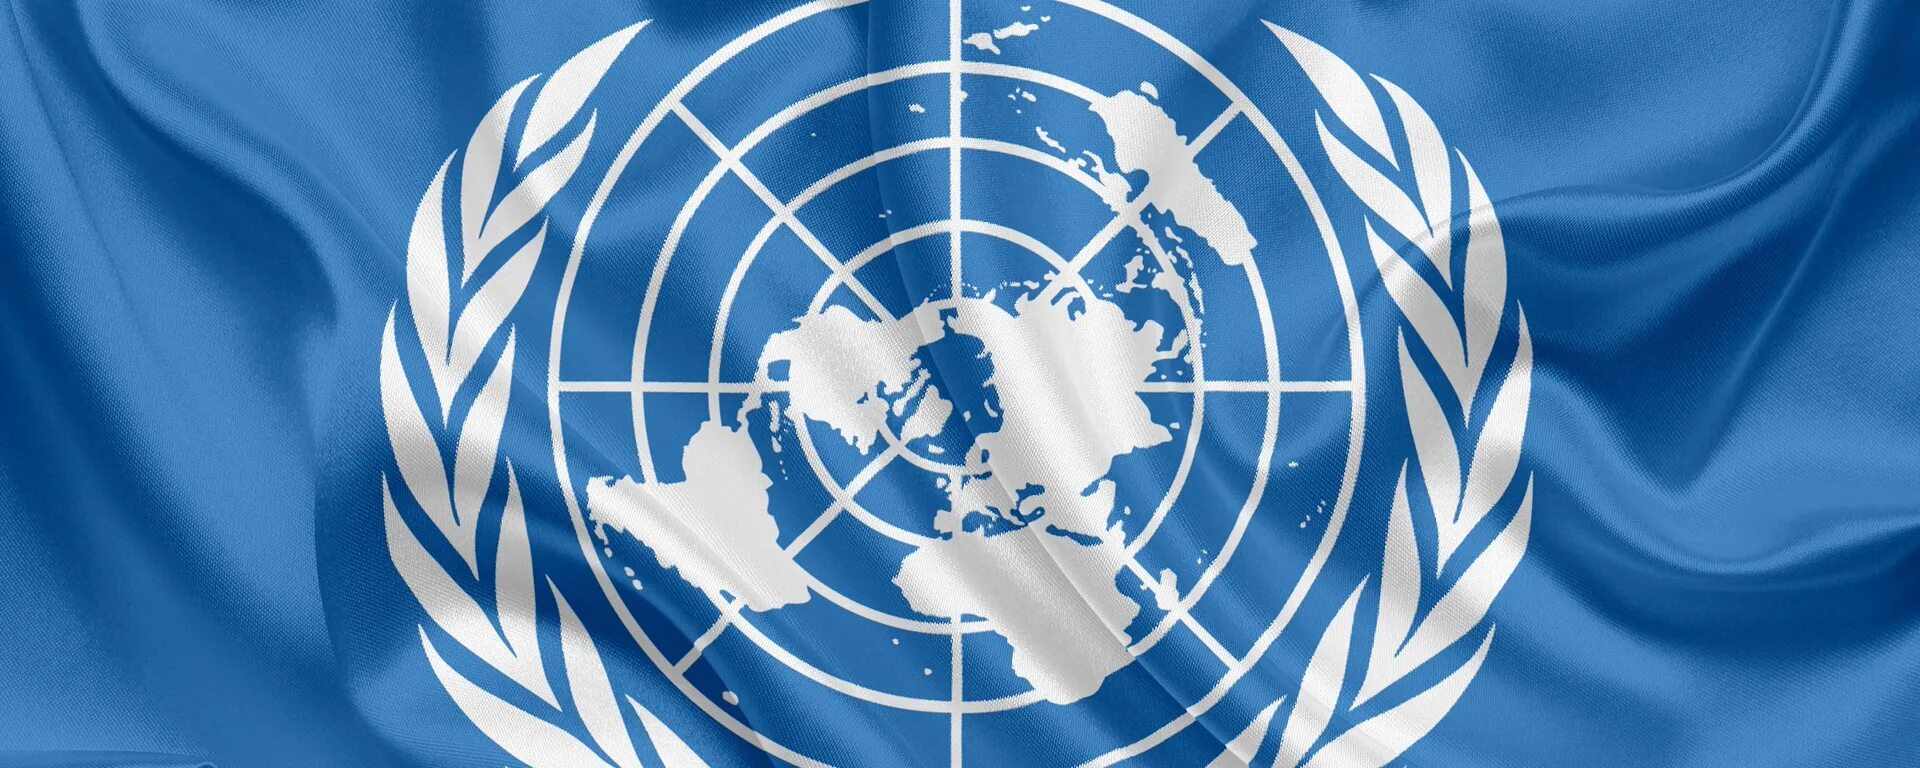 Всемирные организации оон. Генеральная Ассамблея ООН 1959. Флаг ООН. Международные организации. Всемирная организация ООН.